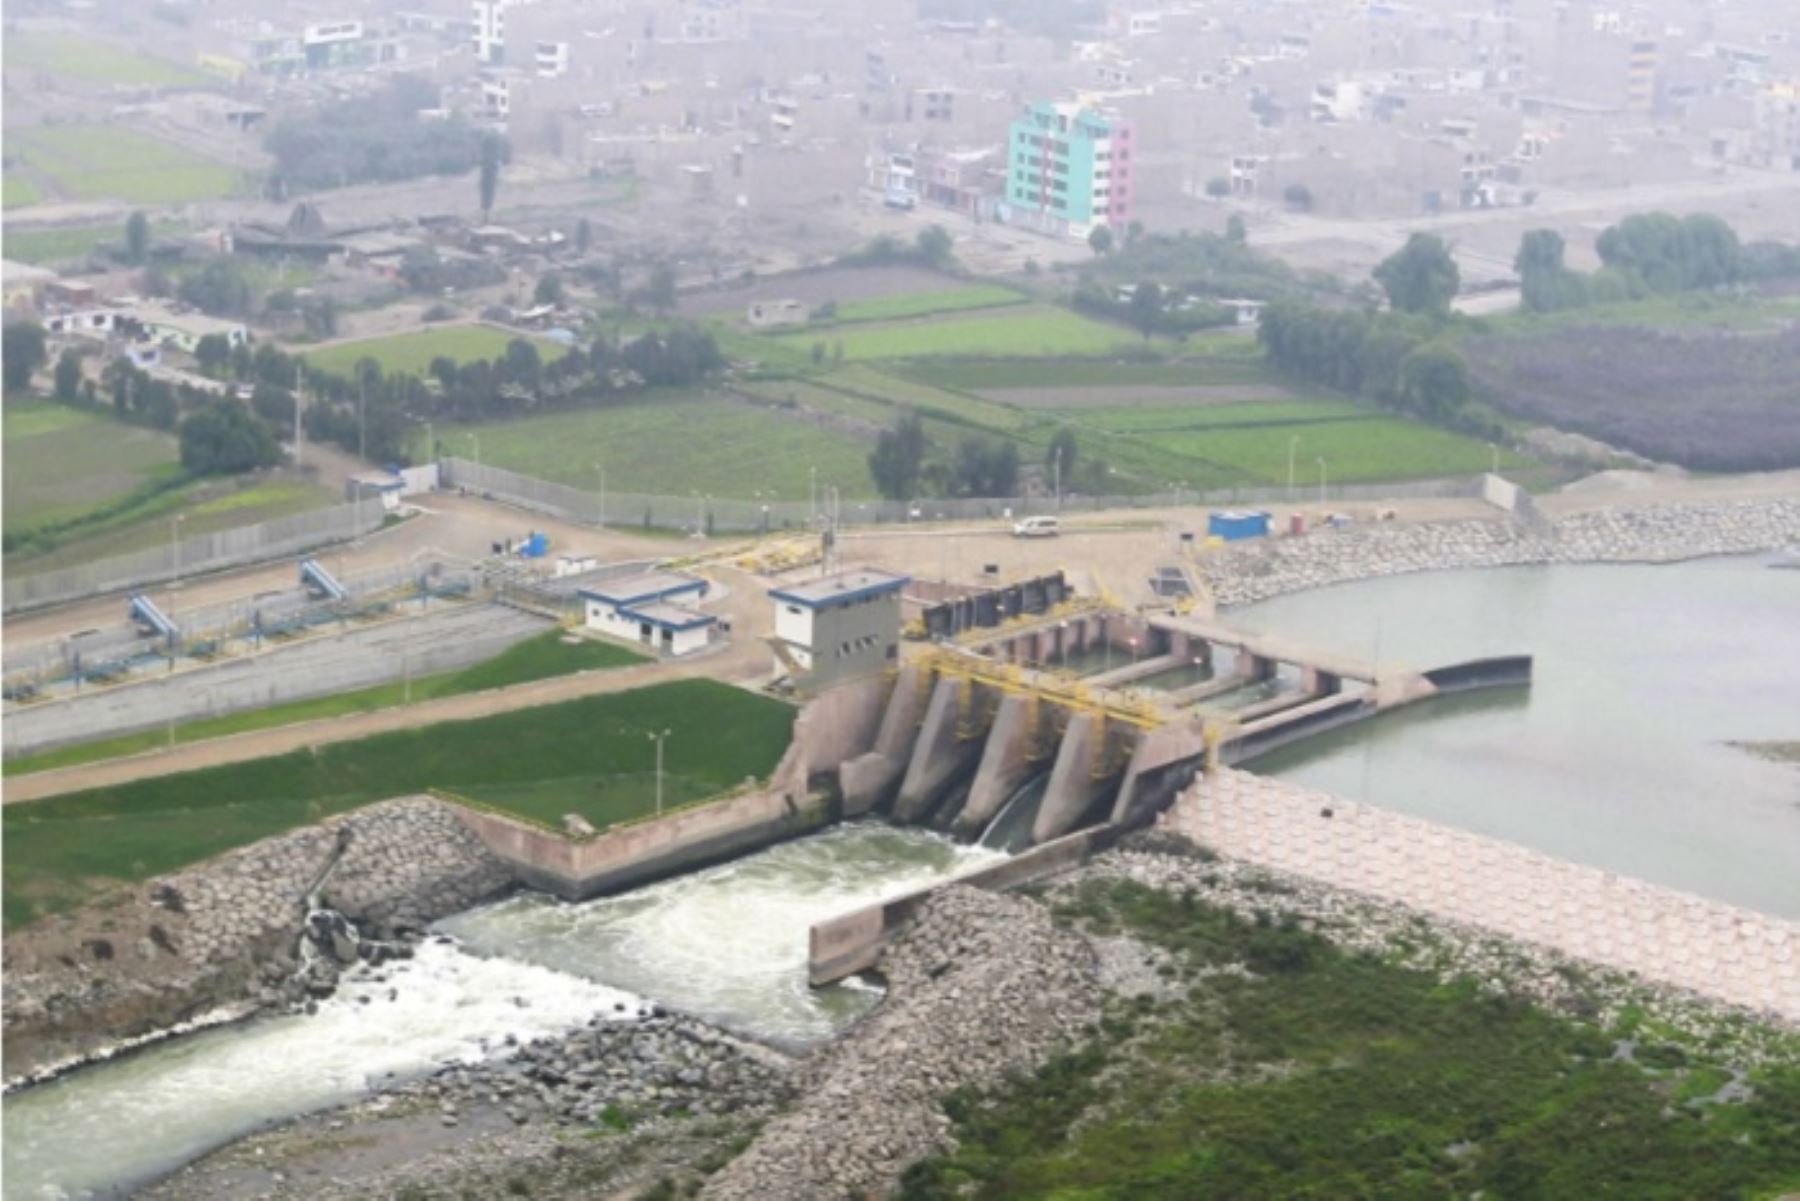 La titular del MVCS explicó que esta represa almacena y trasvasa el recurso hídrico a la cuenca del río Rímac, con un caudal de 2.63 metros cúbicos por segundo.